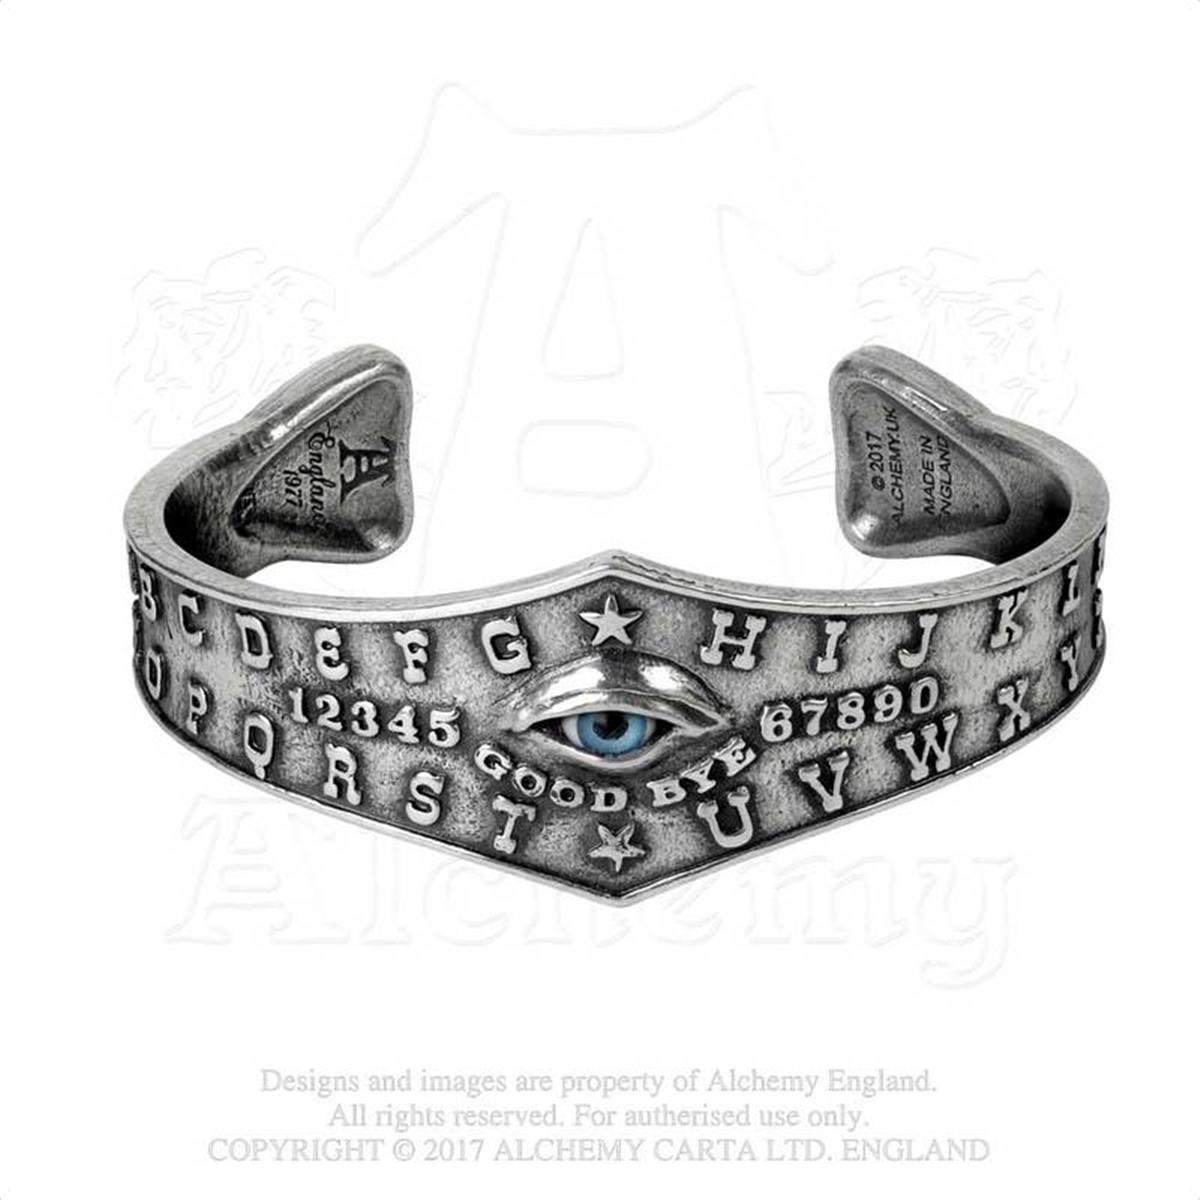 A117 Ouija Eye Bangle, Pewter & Realistic Taxidermy Eye